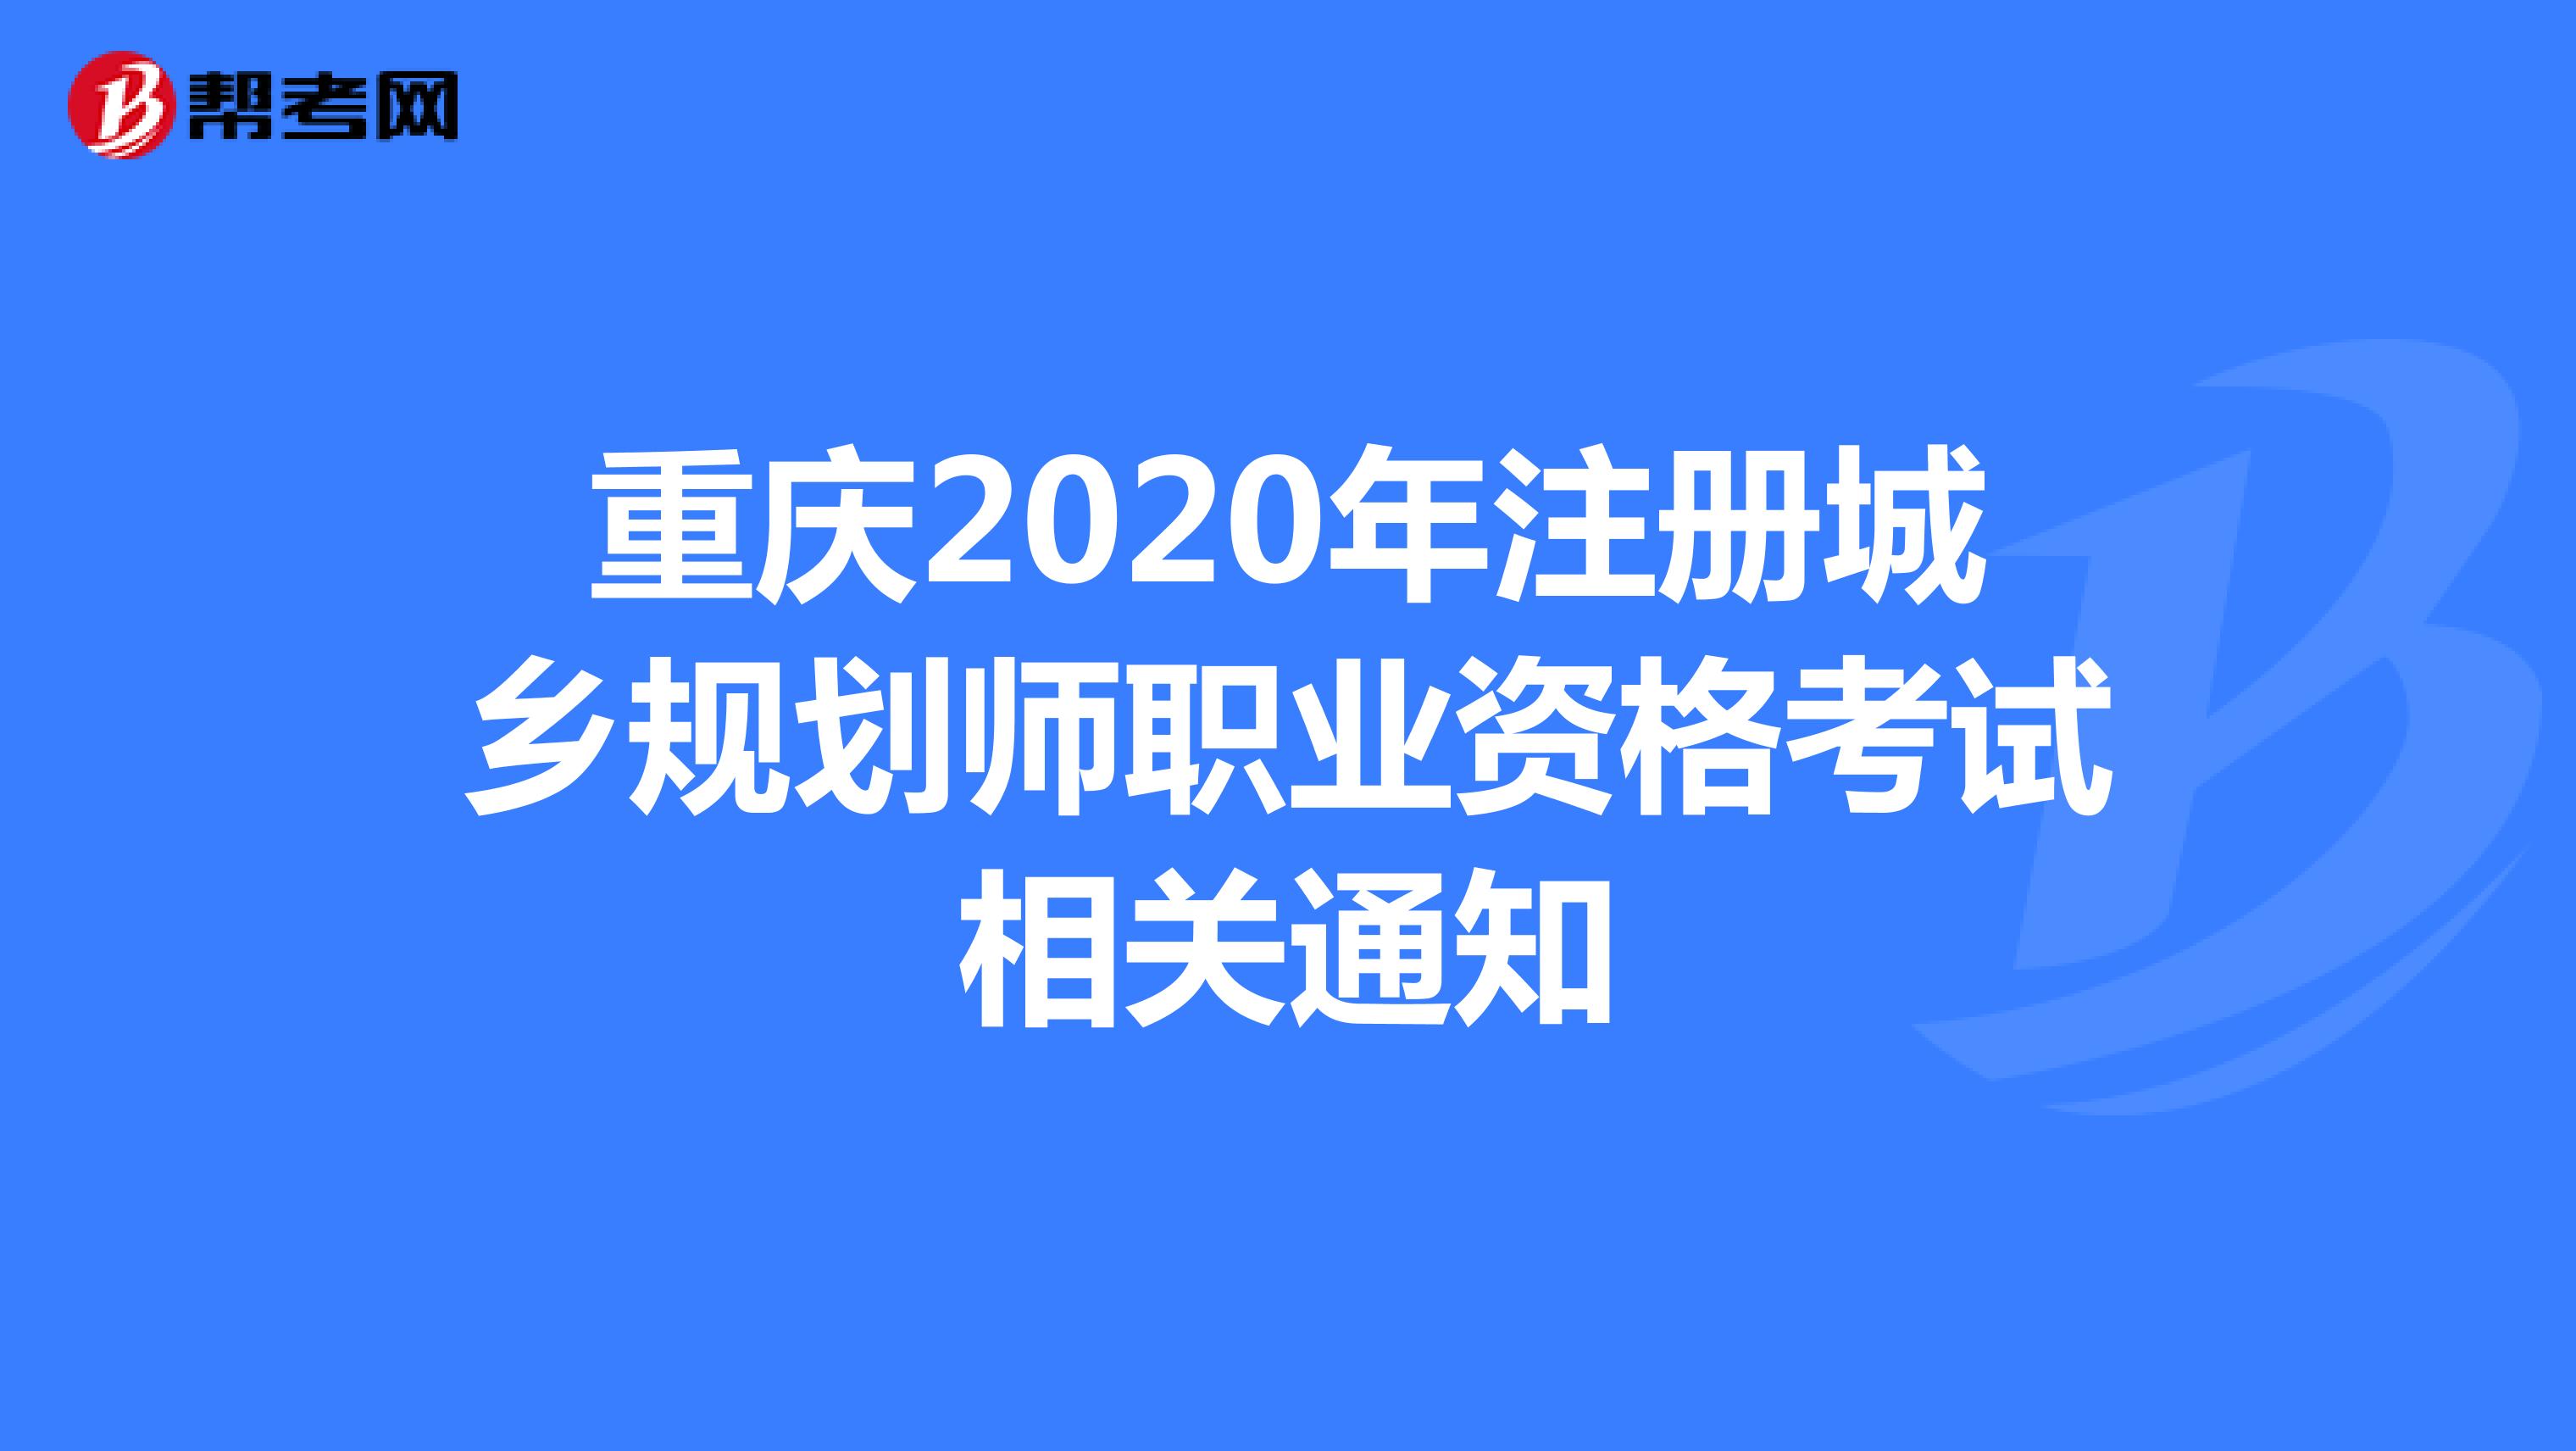 重庆2020年注册城乡规划师职业资格考试相关通知